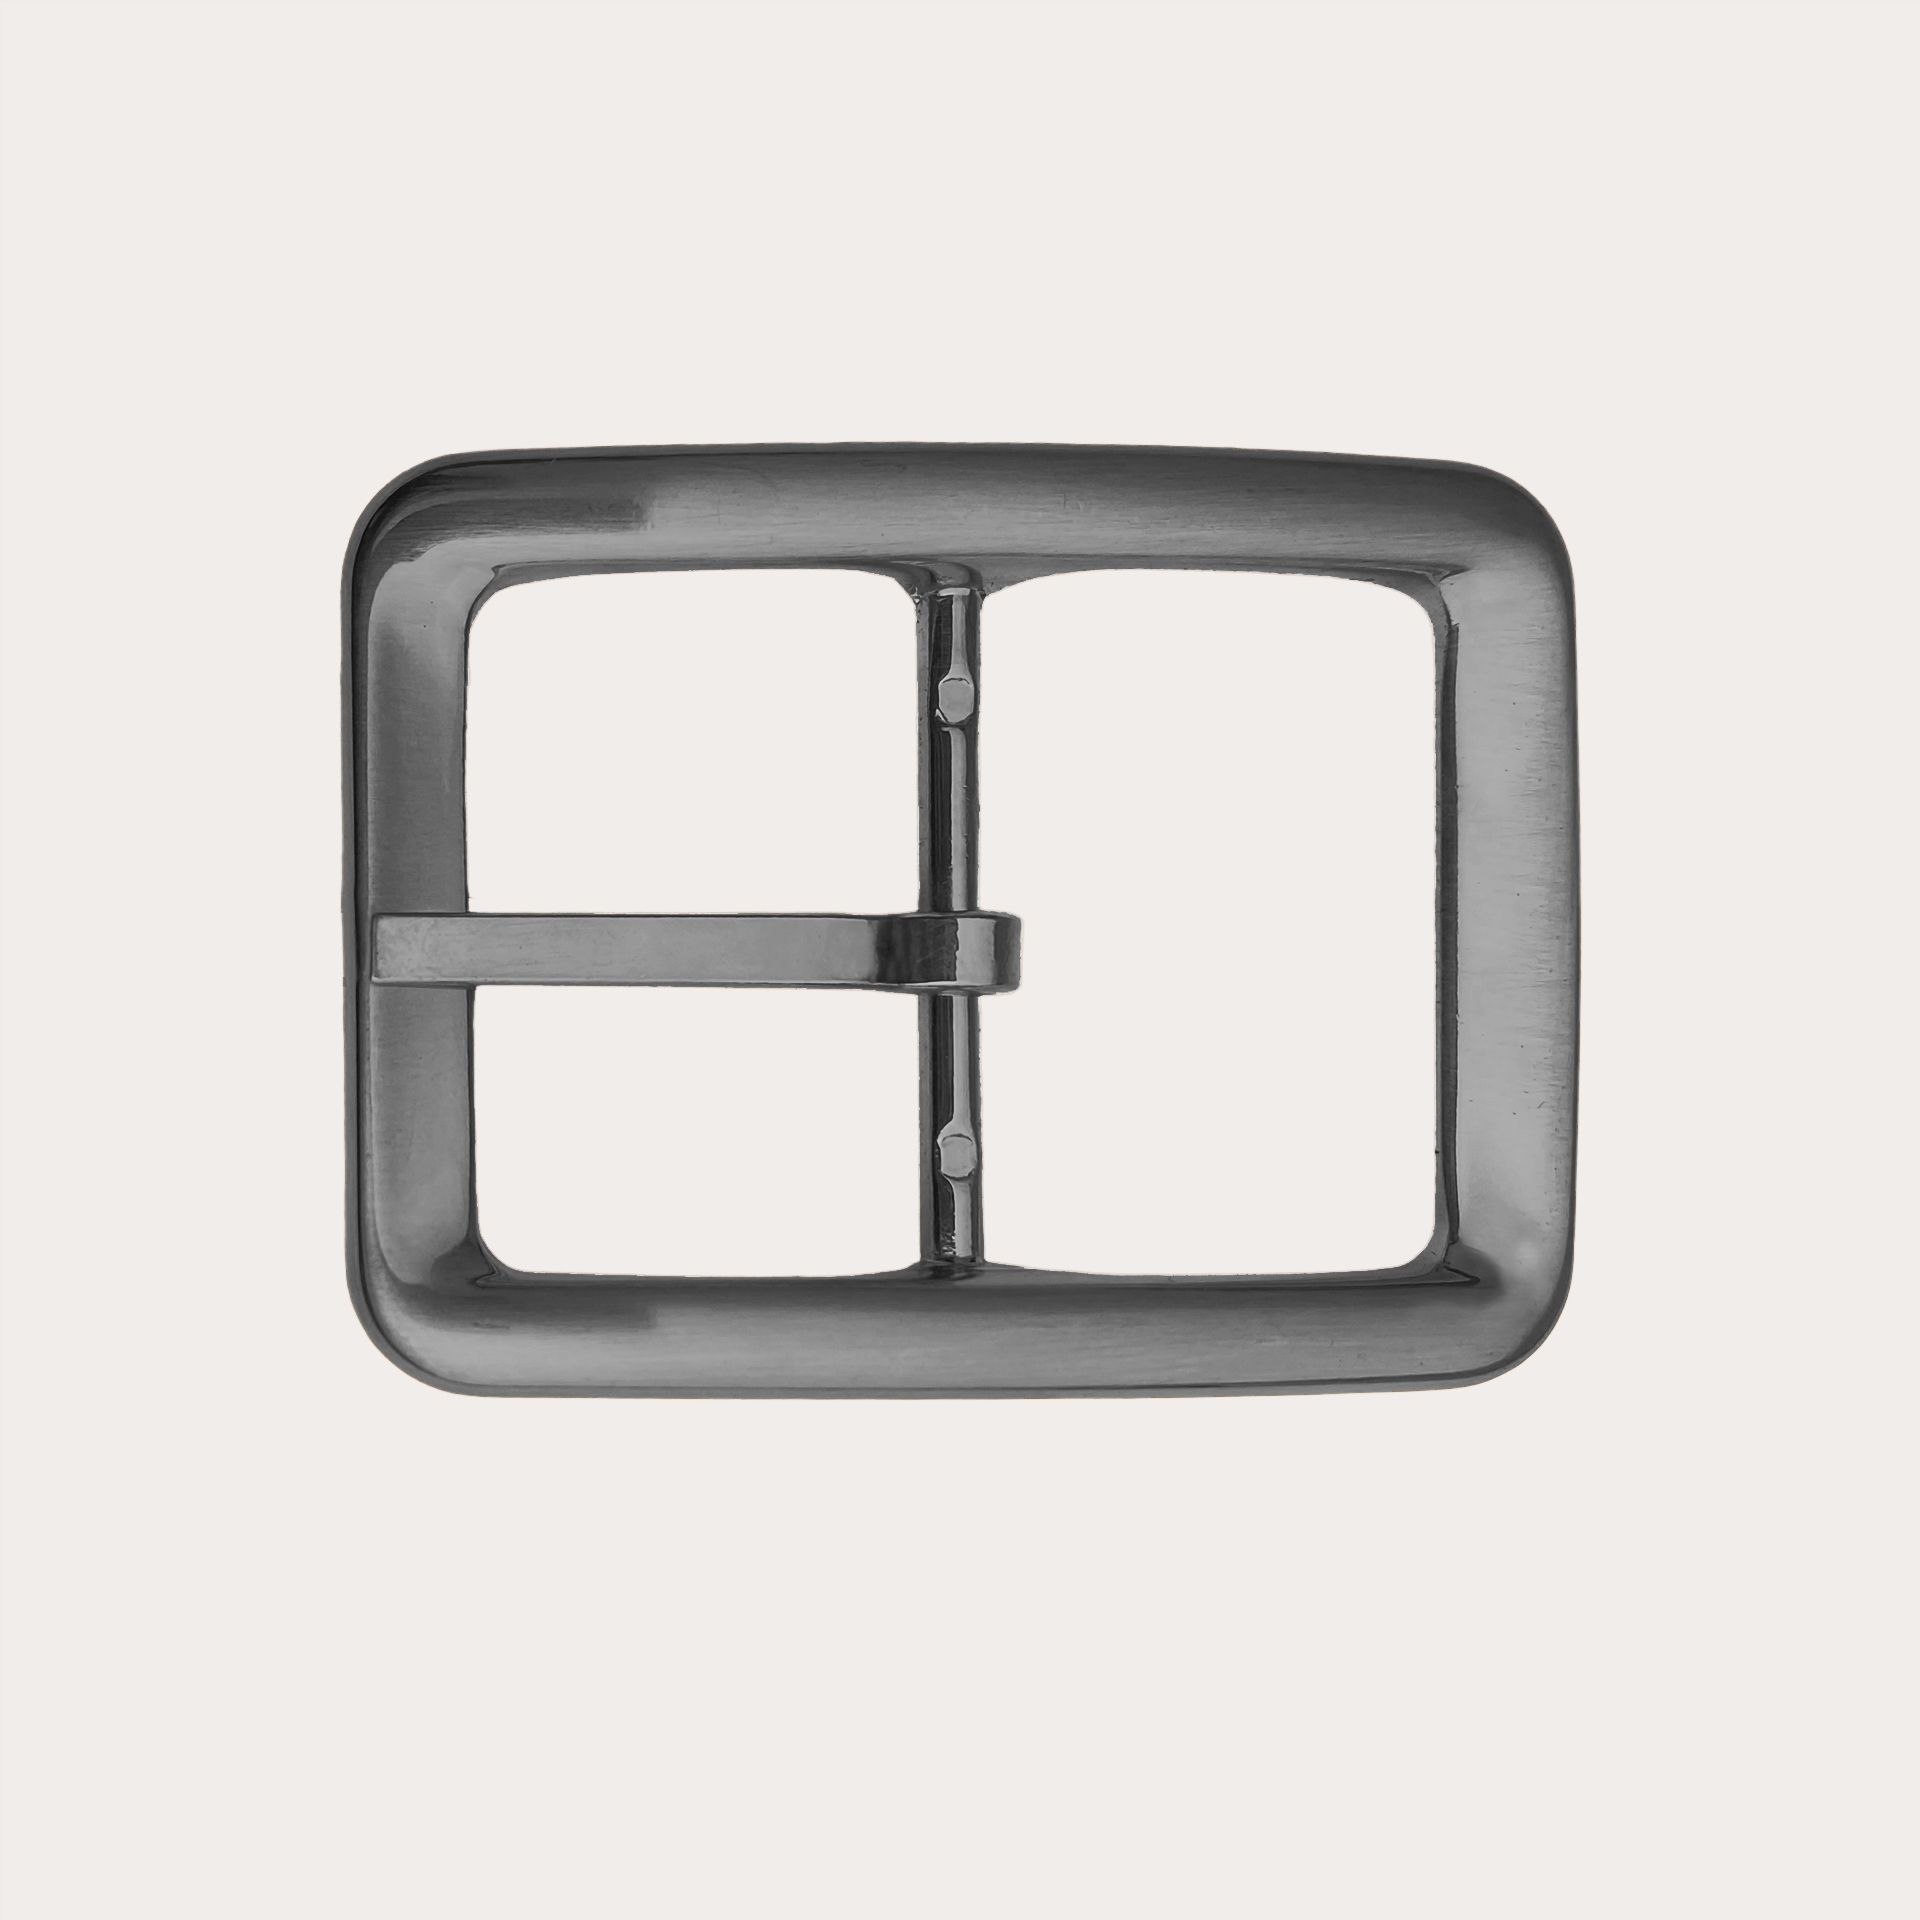 BRUCLE Fibbia doppia reversibile nichel free 35mm, color grigio antracite satinato